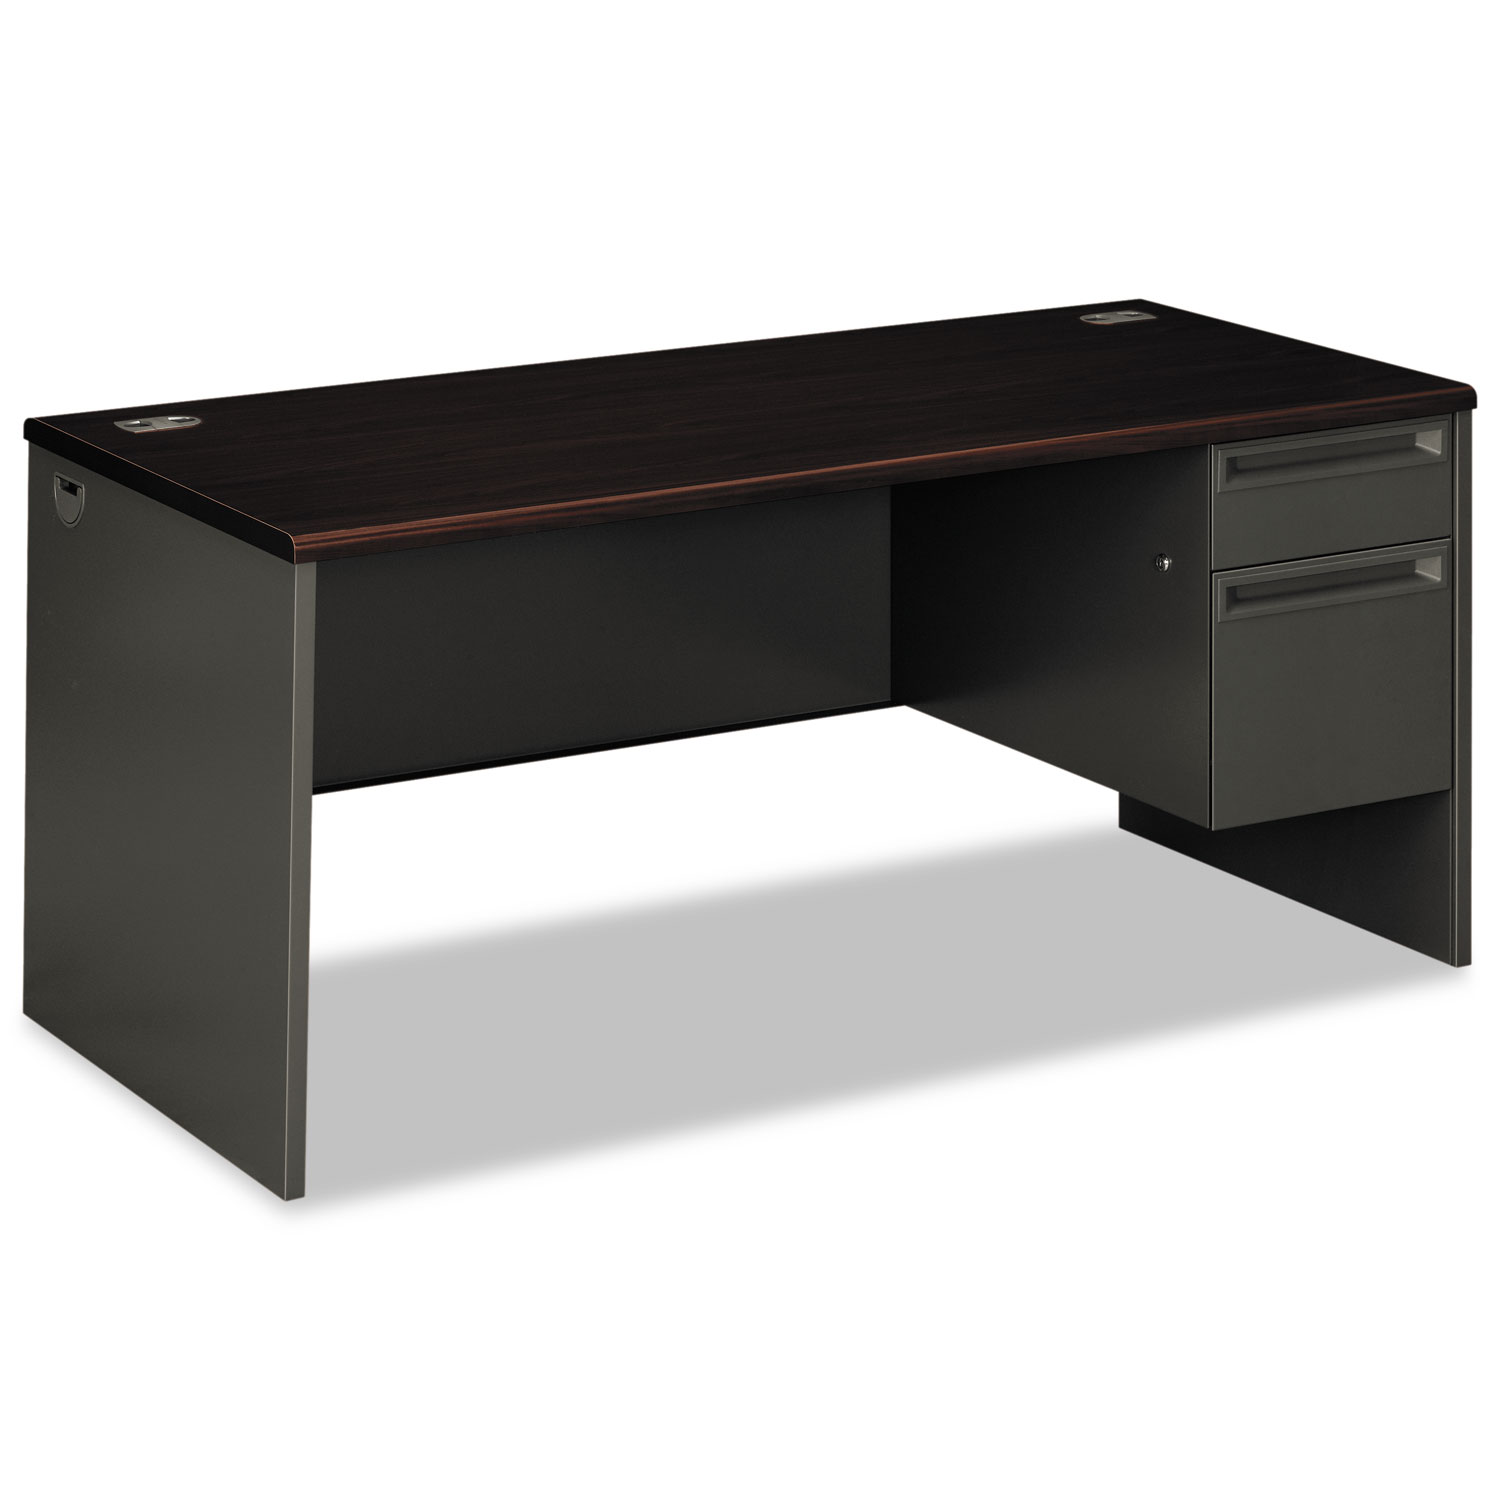  HON H38291R.N.S 38000 Series Right Pedestal Desk, 66w x 30d x 29.5h, Mahogany/Charcoal (HON38291RNS) 